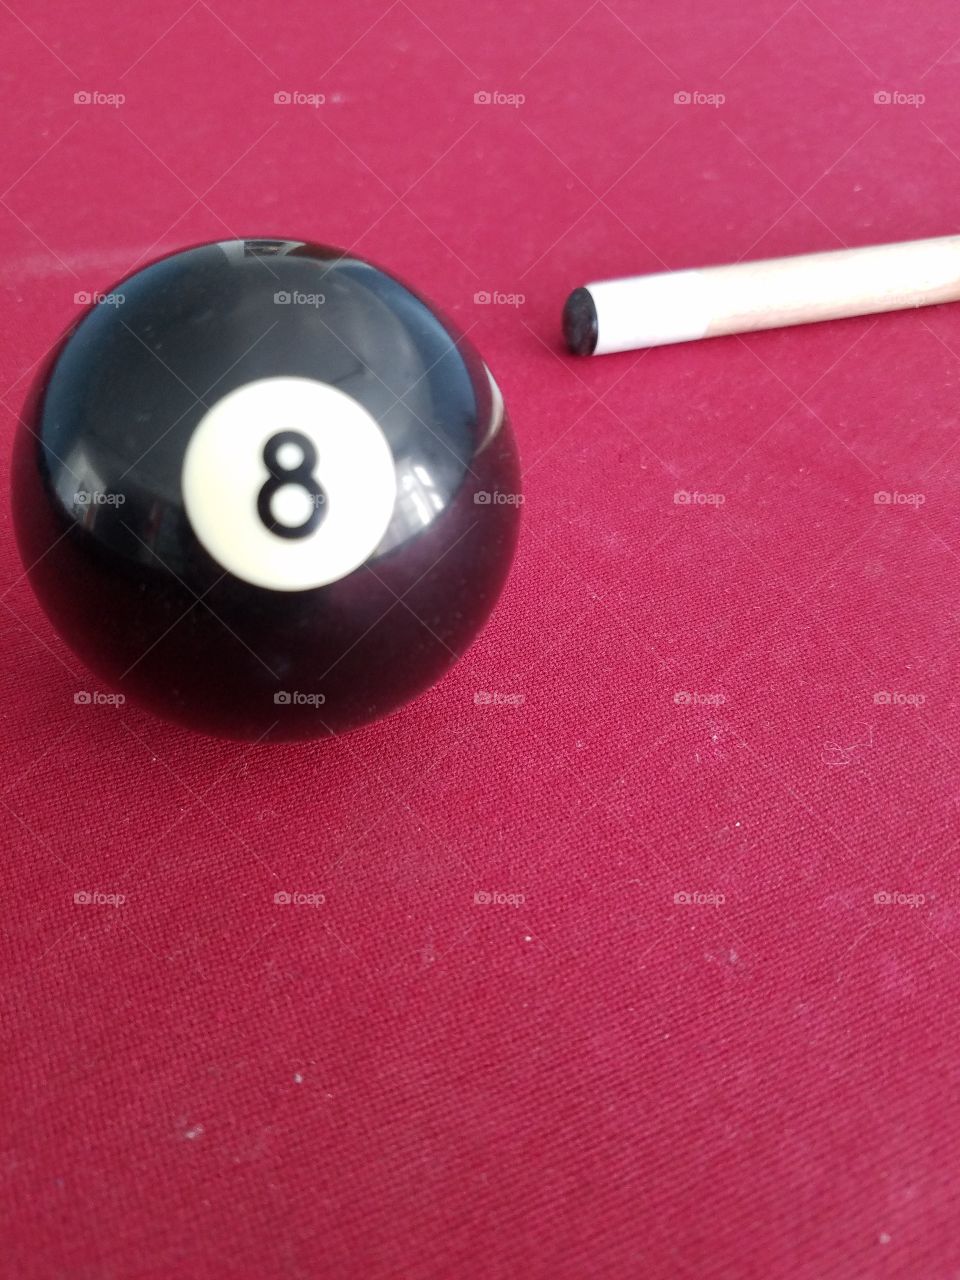 Lucky 8 ball